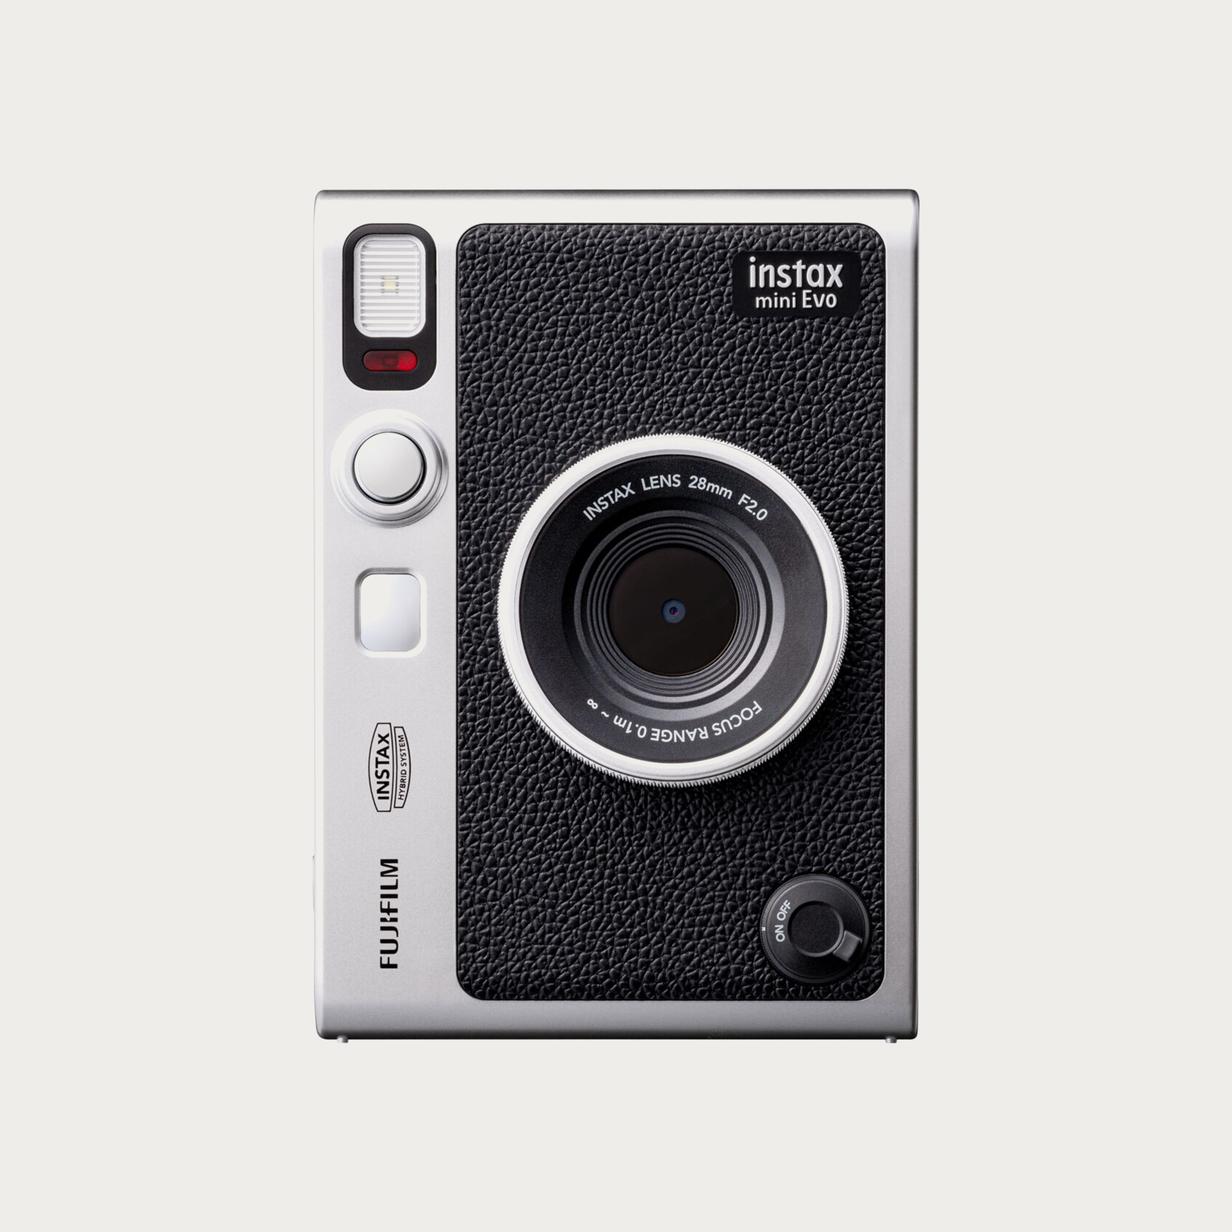 Theseus bitter Bounce Fujifilm Instax Mini Evo Hybrid Instant Camera (16745183) - Moment